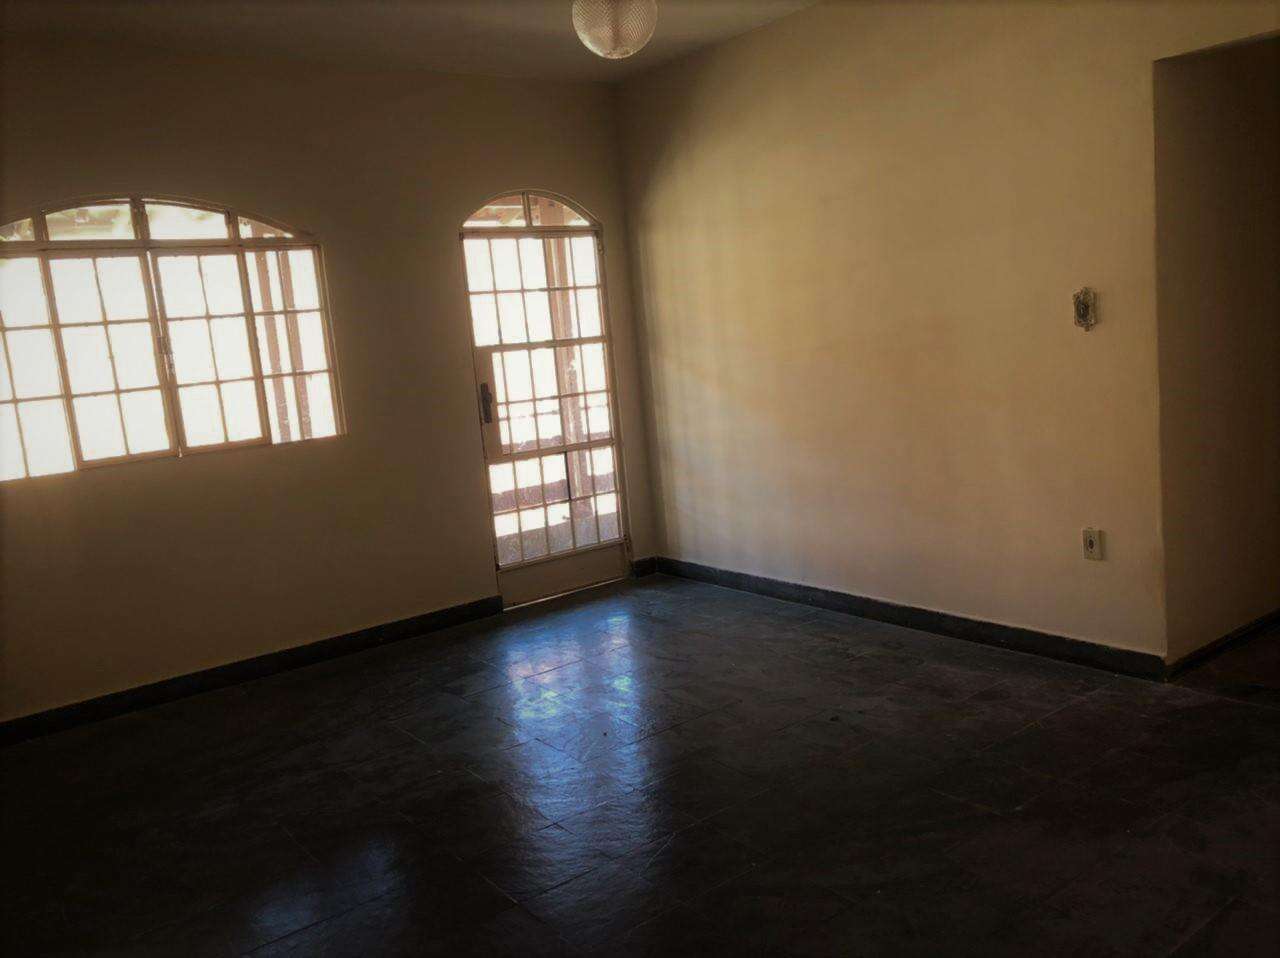 Apartamento 3 quartos à venda no Limoeiro: 8df6a573-7-whatsapp-image-2021-06-18-at-16.32.56.jpeg